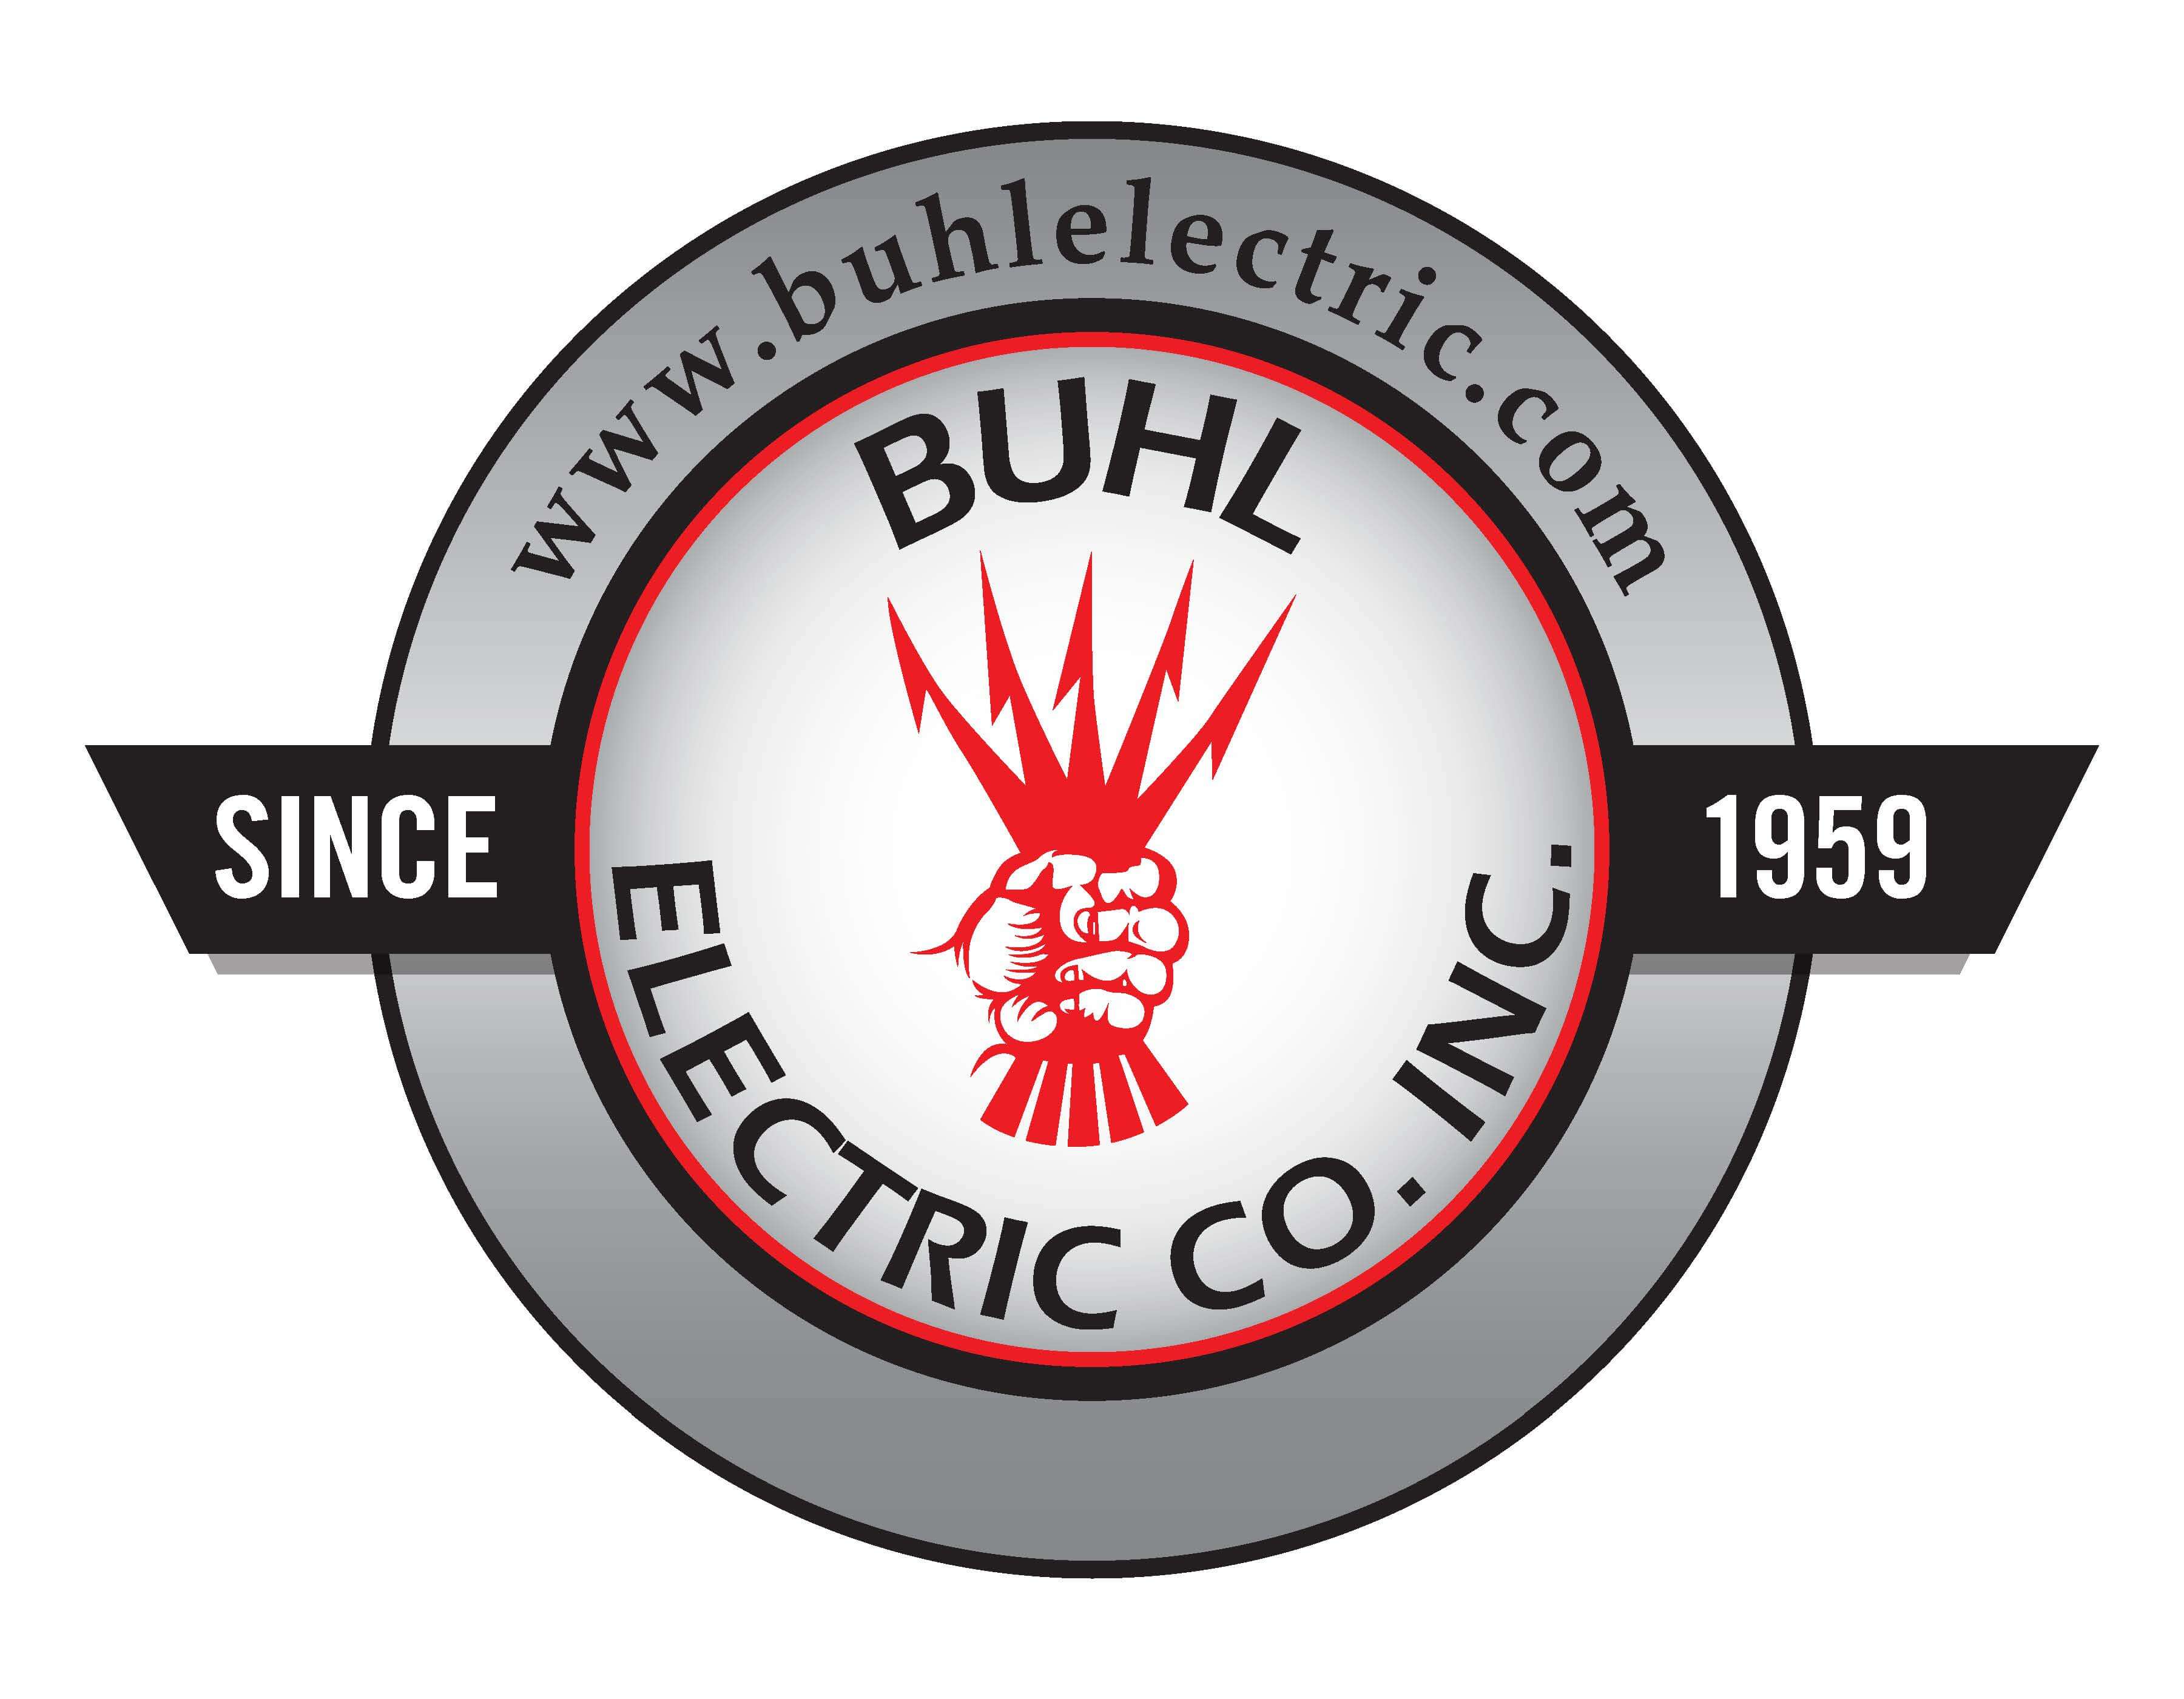 Buhl Electric